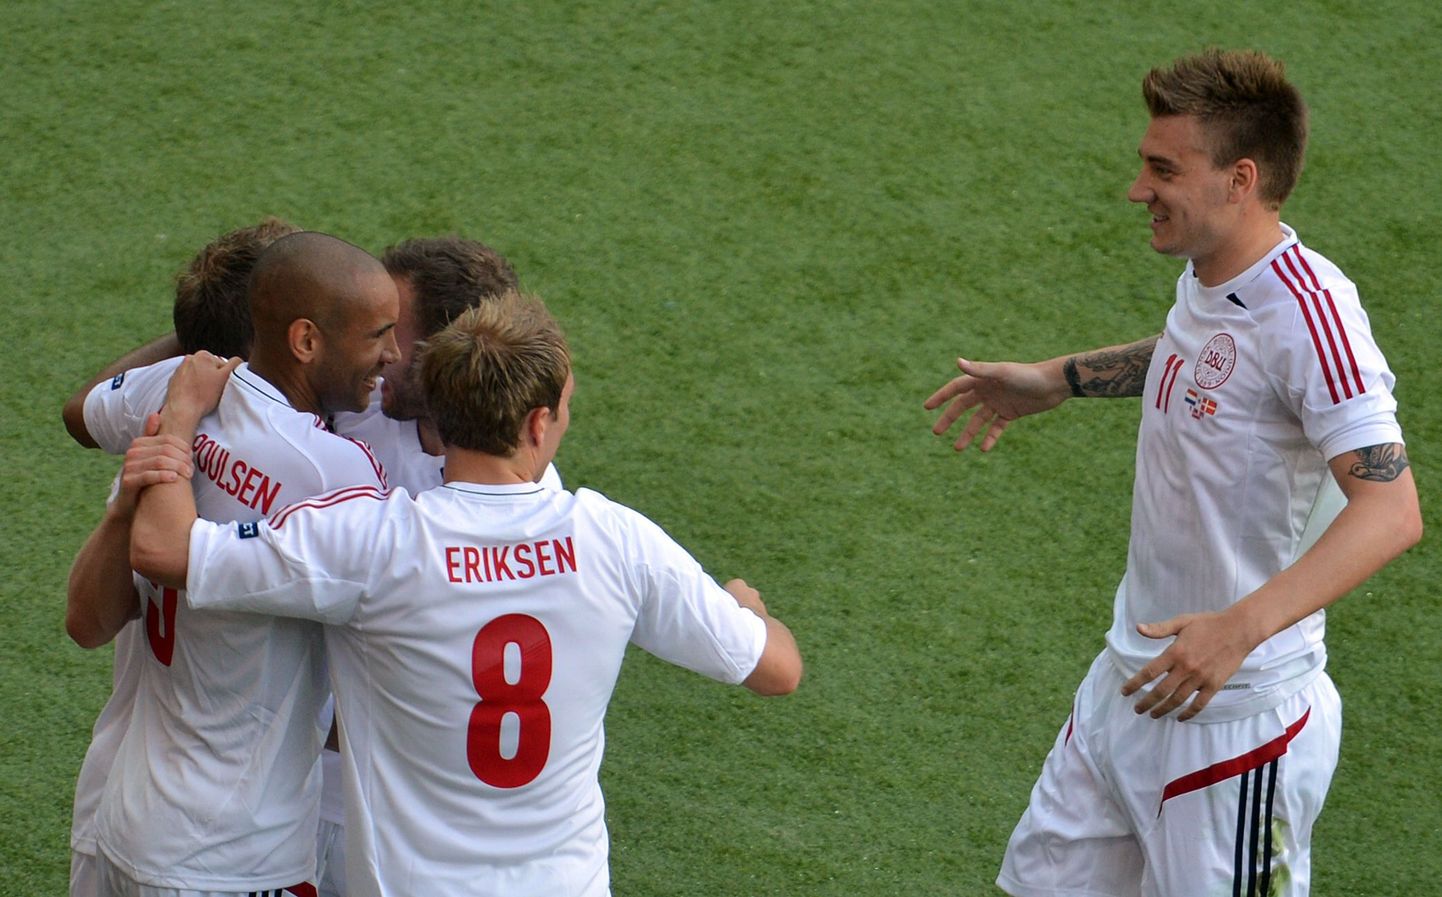 Taani mängijad väravat tähistamas.